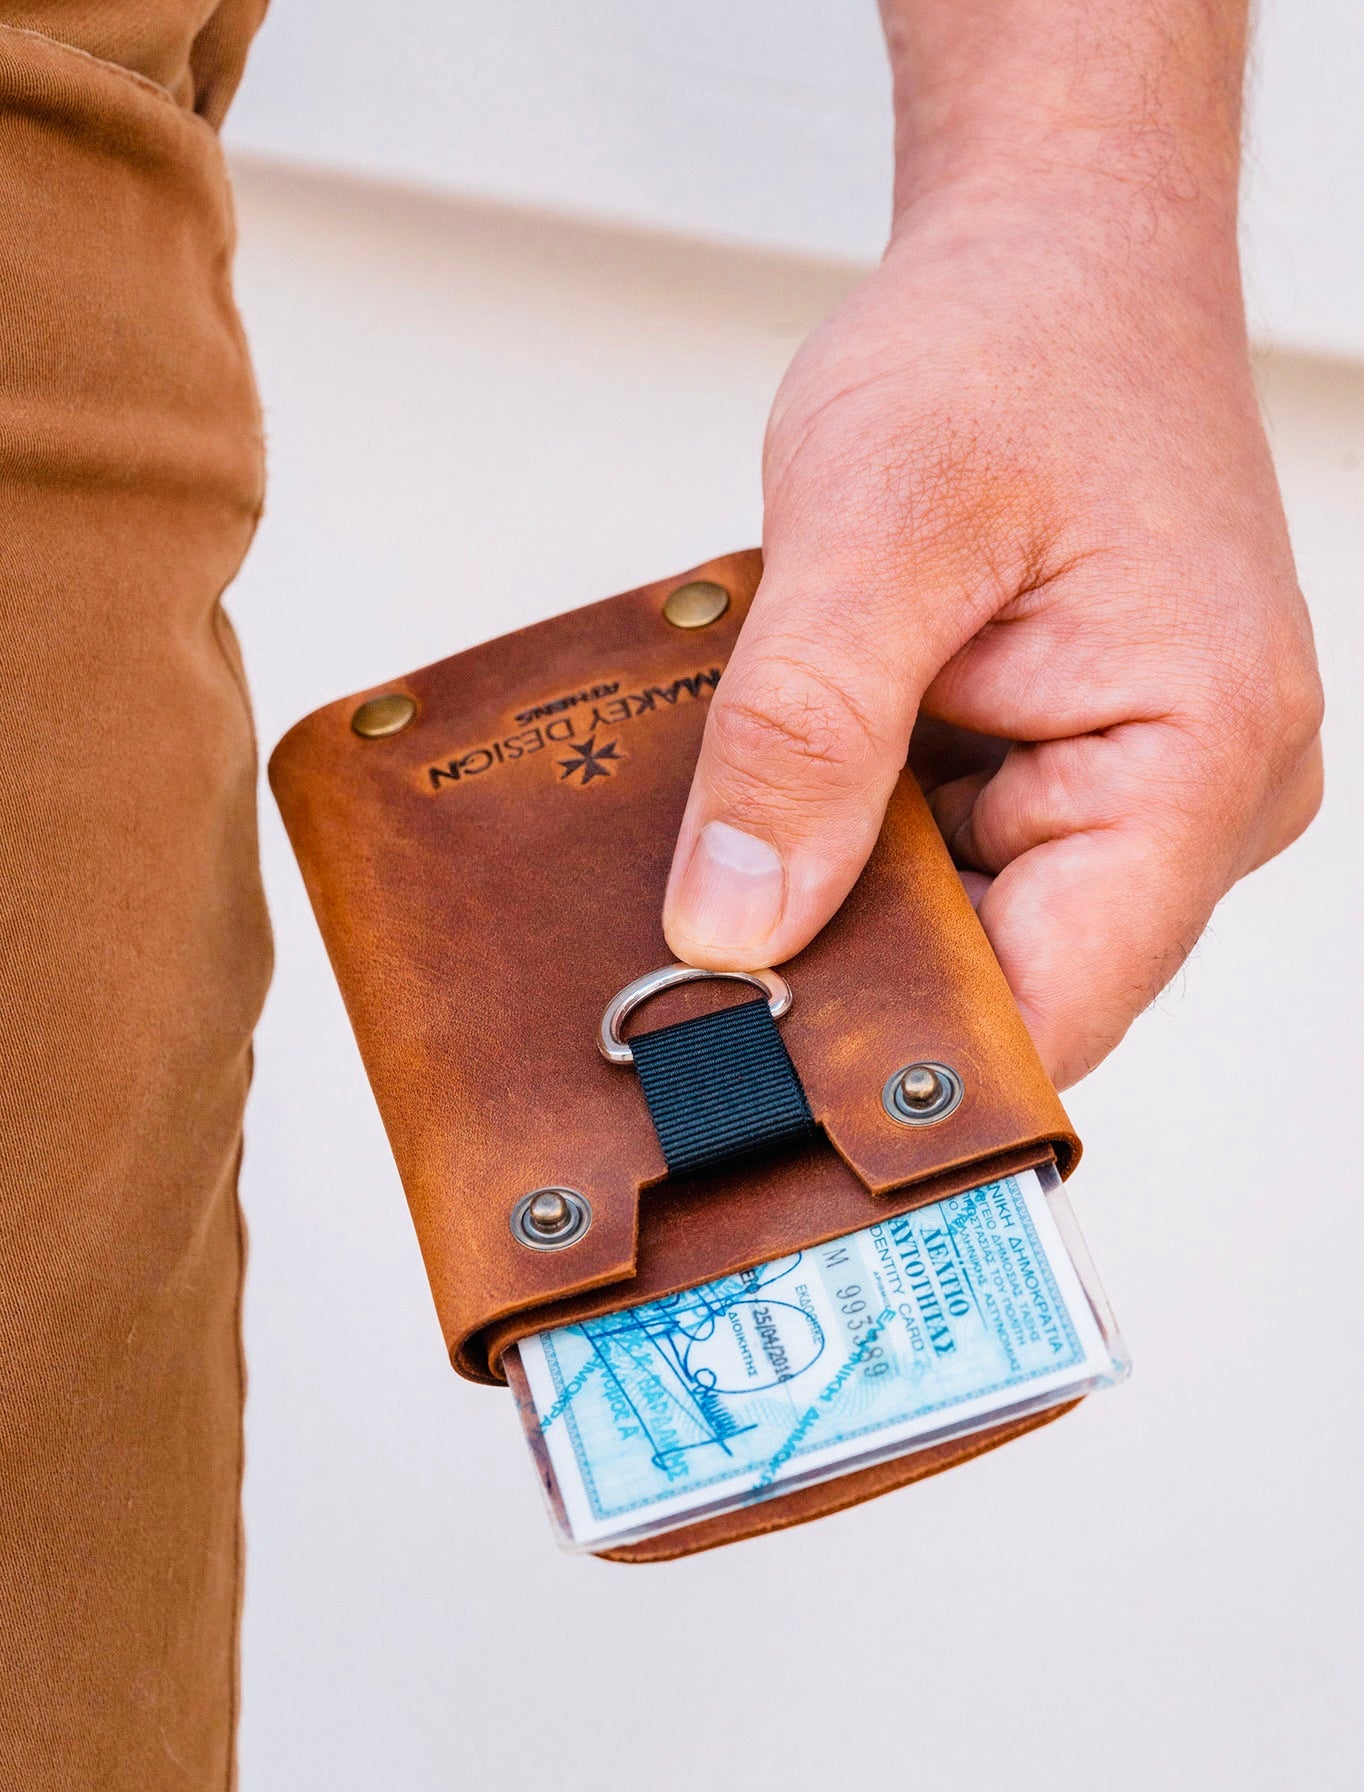 Πορτοφόλι για Ταυτότητα, Κάρτες, Χαρτονομίσματα & Κέρματα "ID Wallet"